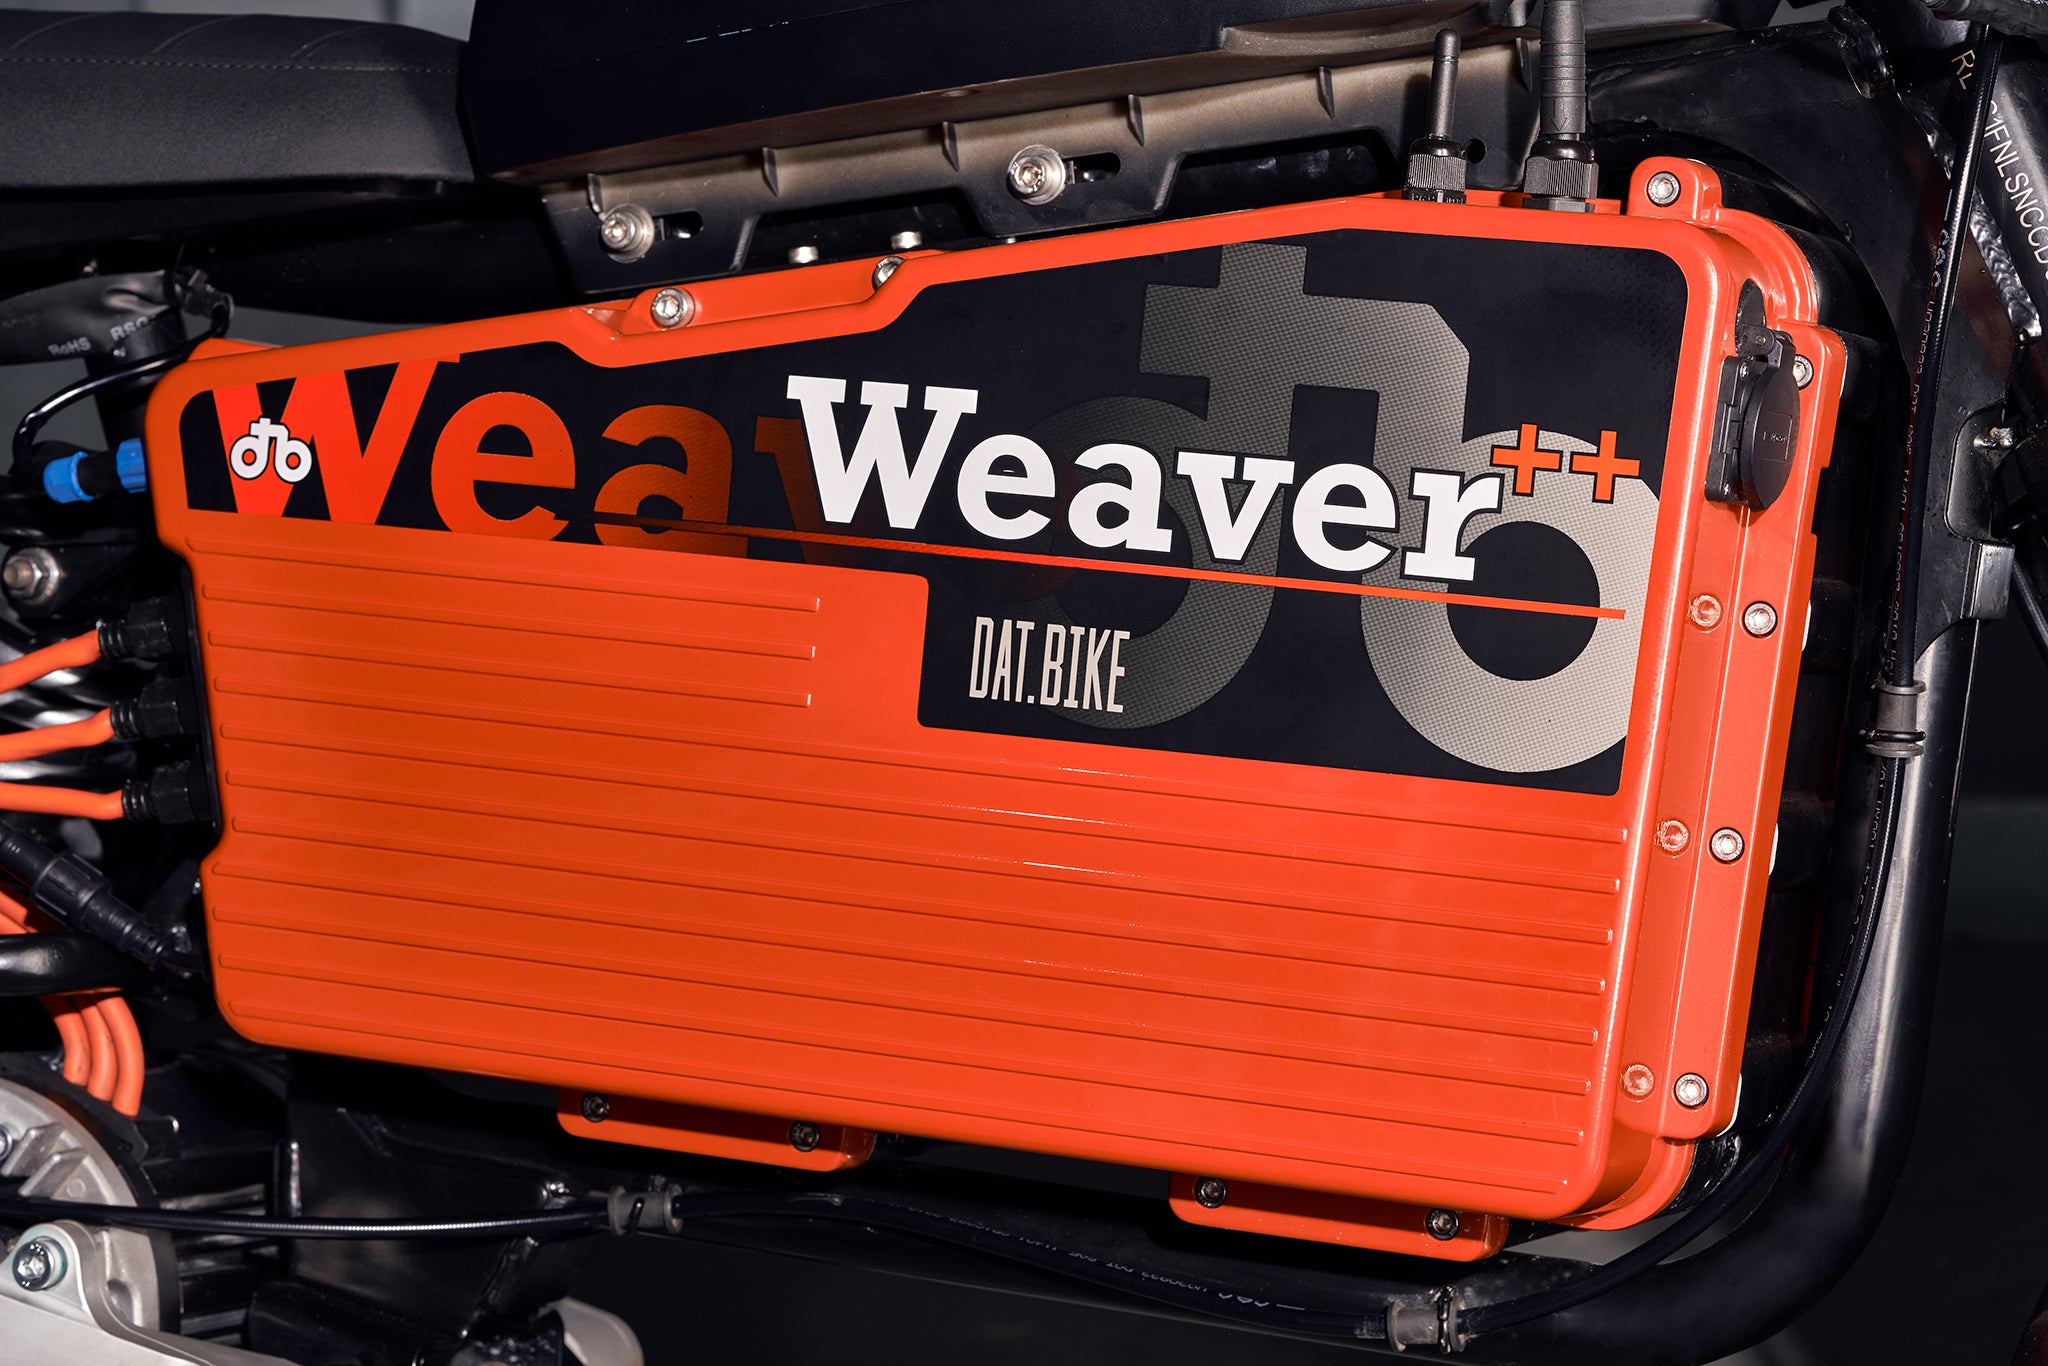 Chương trình thu cũ đổi mới (trade in) cho xe Weaver ++